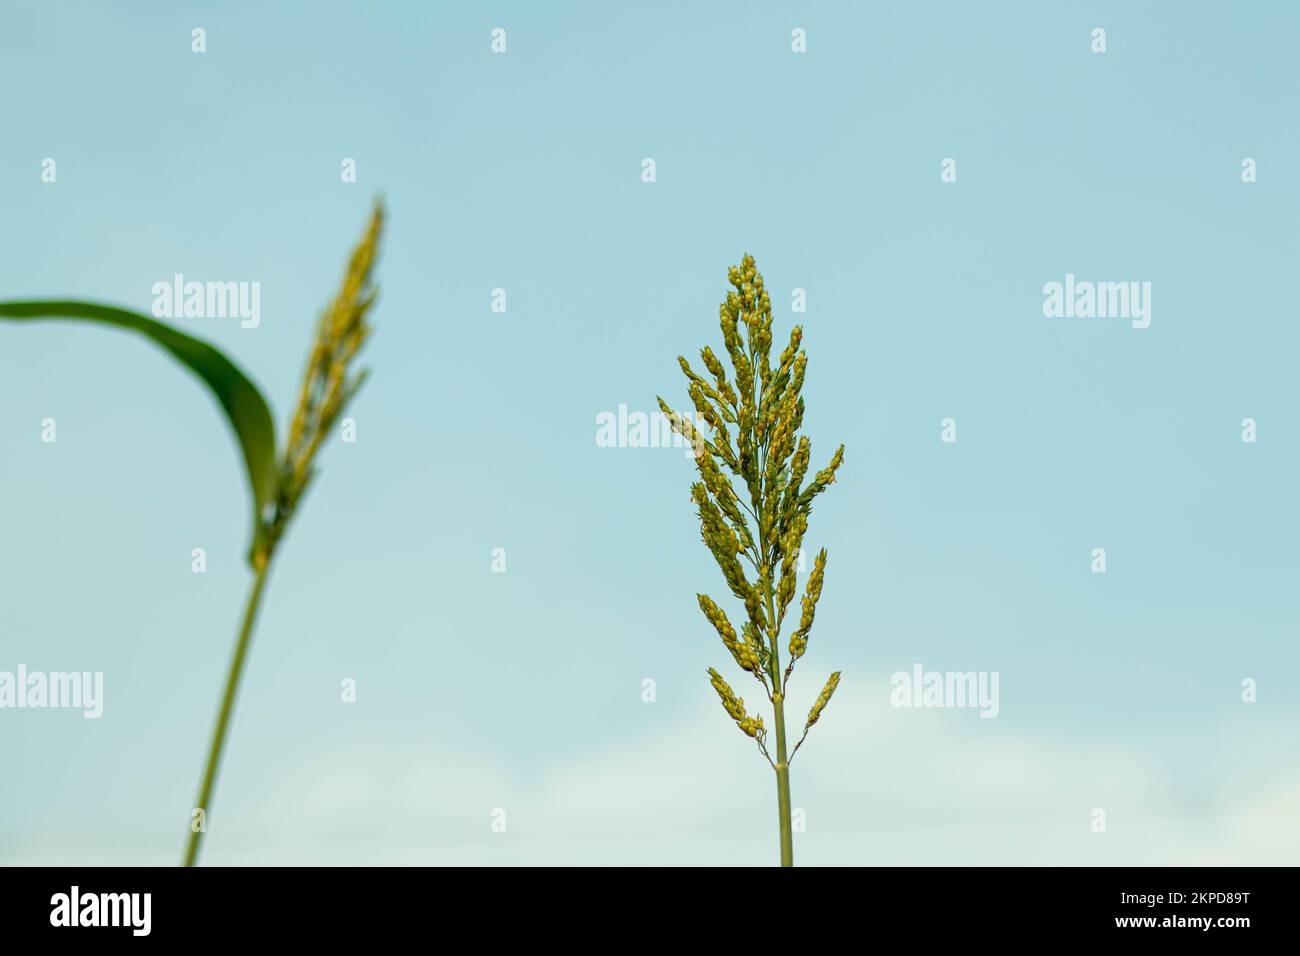 Ciel bleu nuage blanc derrière la plante de maïs. Le maïs produit un ensilage de haute qualité pour les bovins laitiers, le bœuf et les moutons à moindre coût que l'ensilage d'herbe Banque D'Images